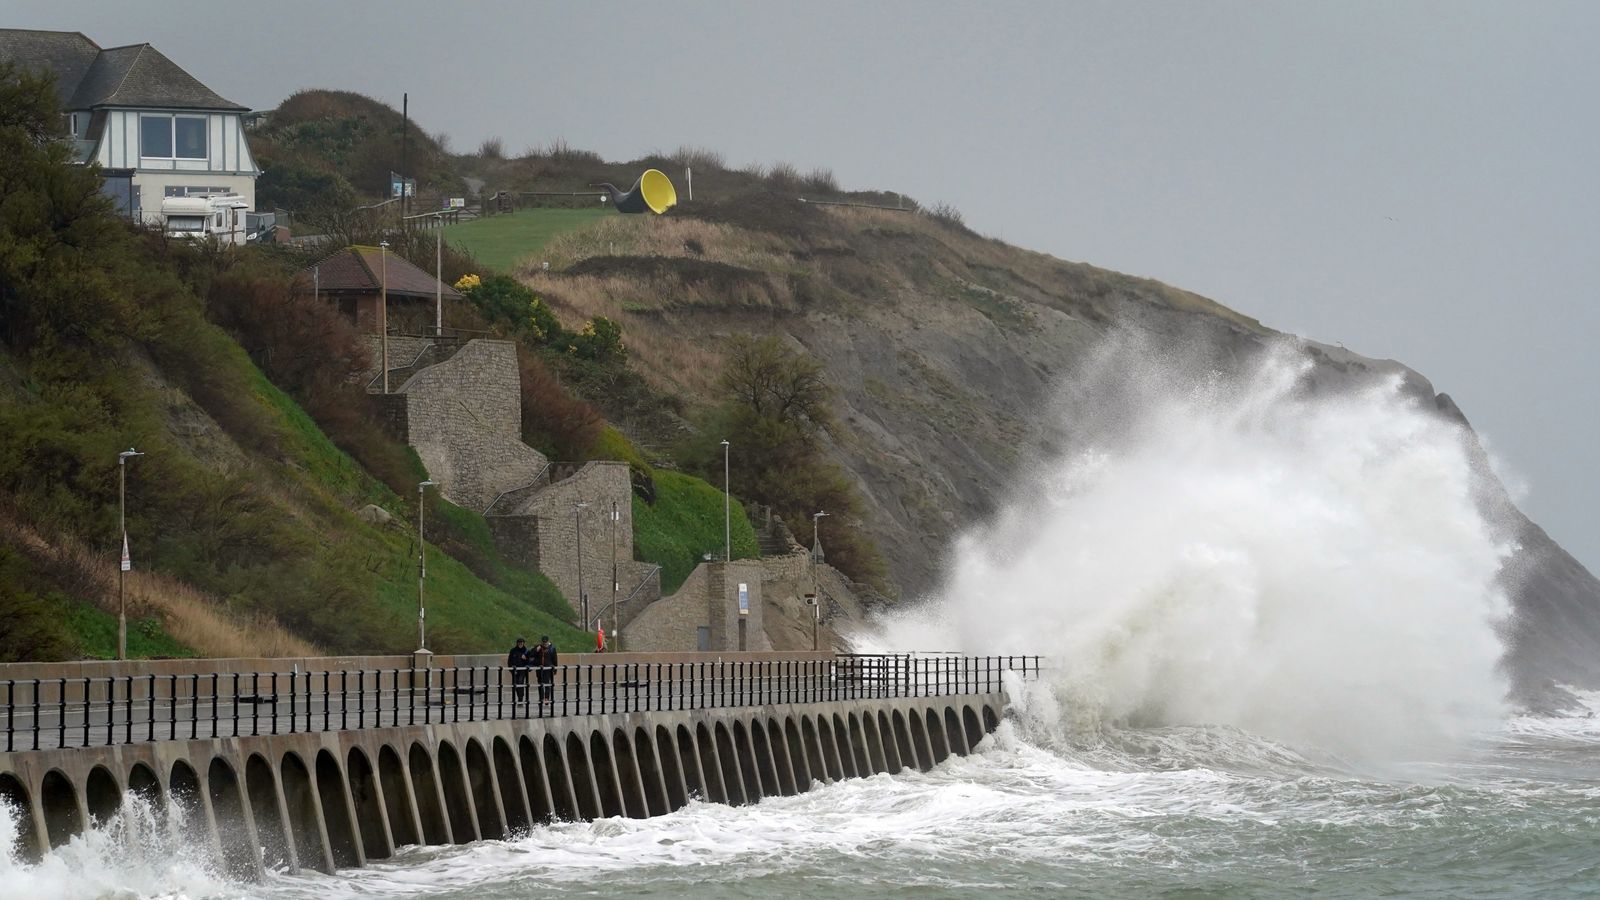 Времето в Обединеното кралство: Предупреждение „Опасност за живота“ при прогноза за вятър със скорост 80 мили в час